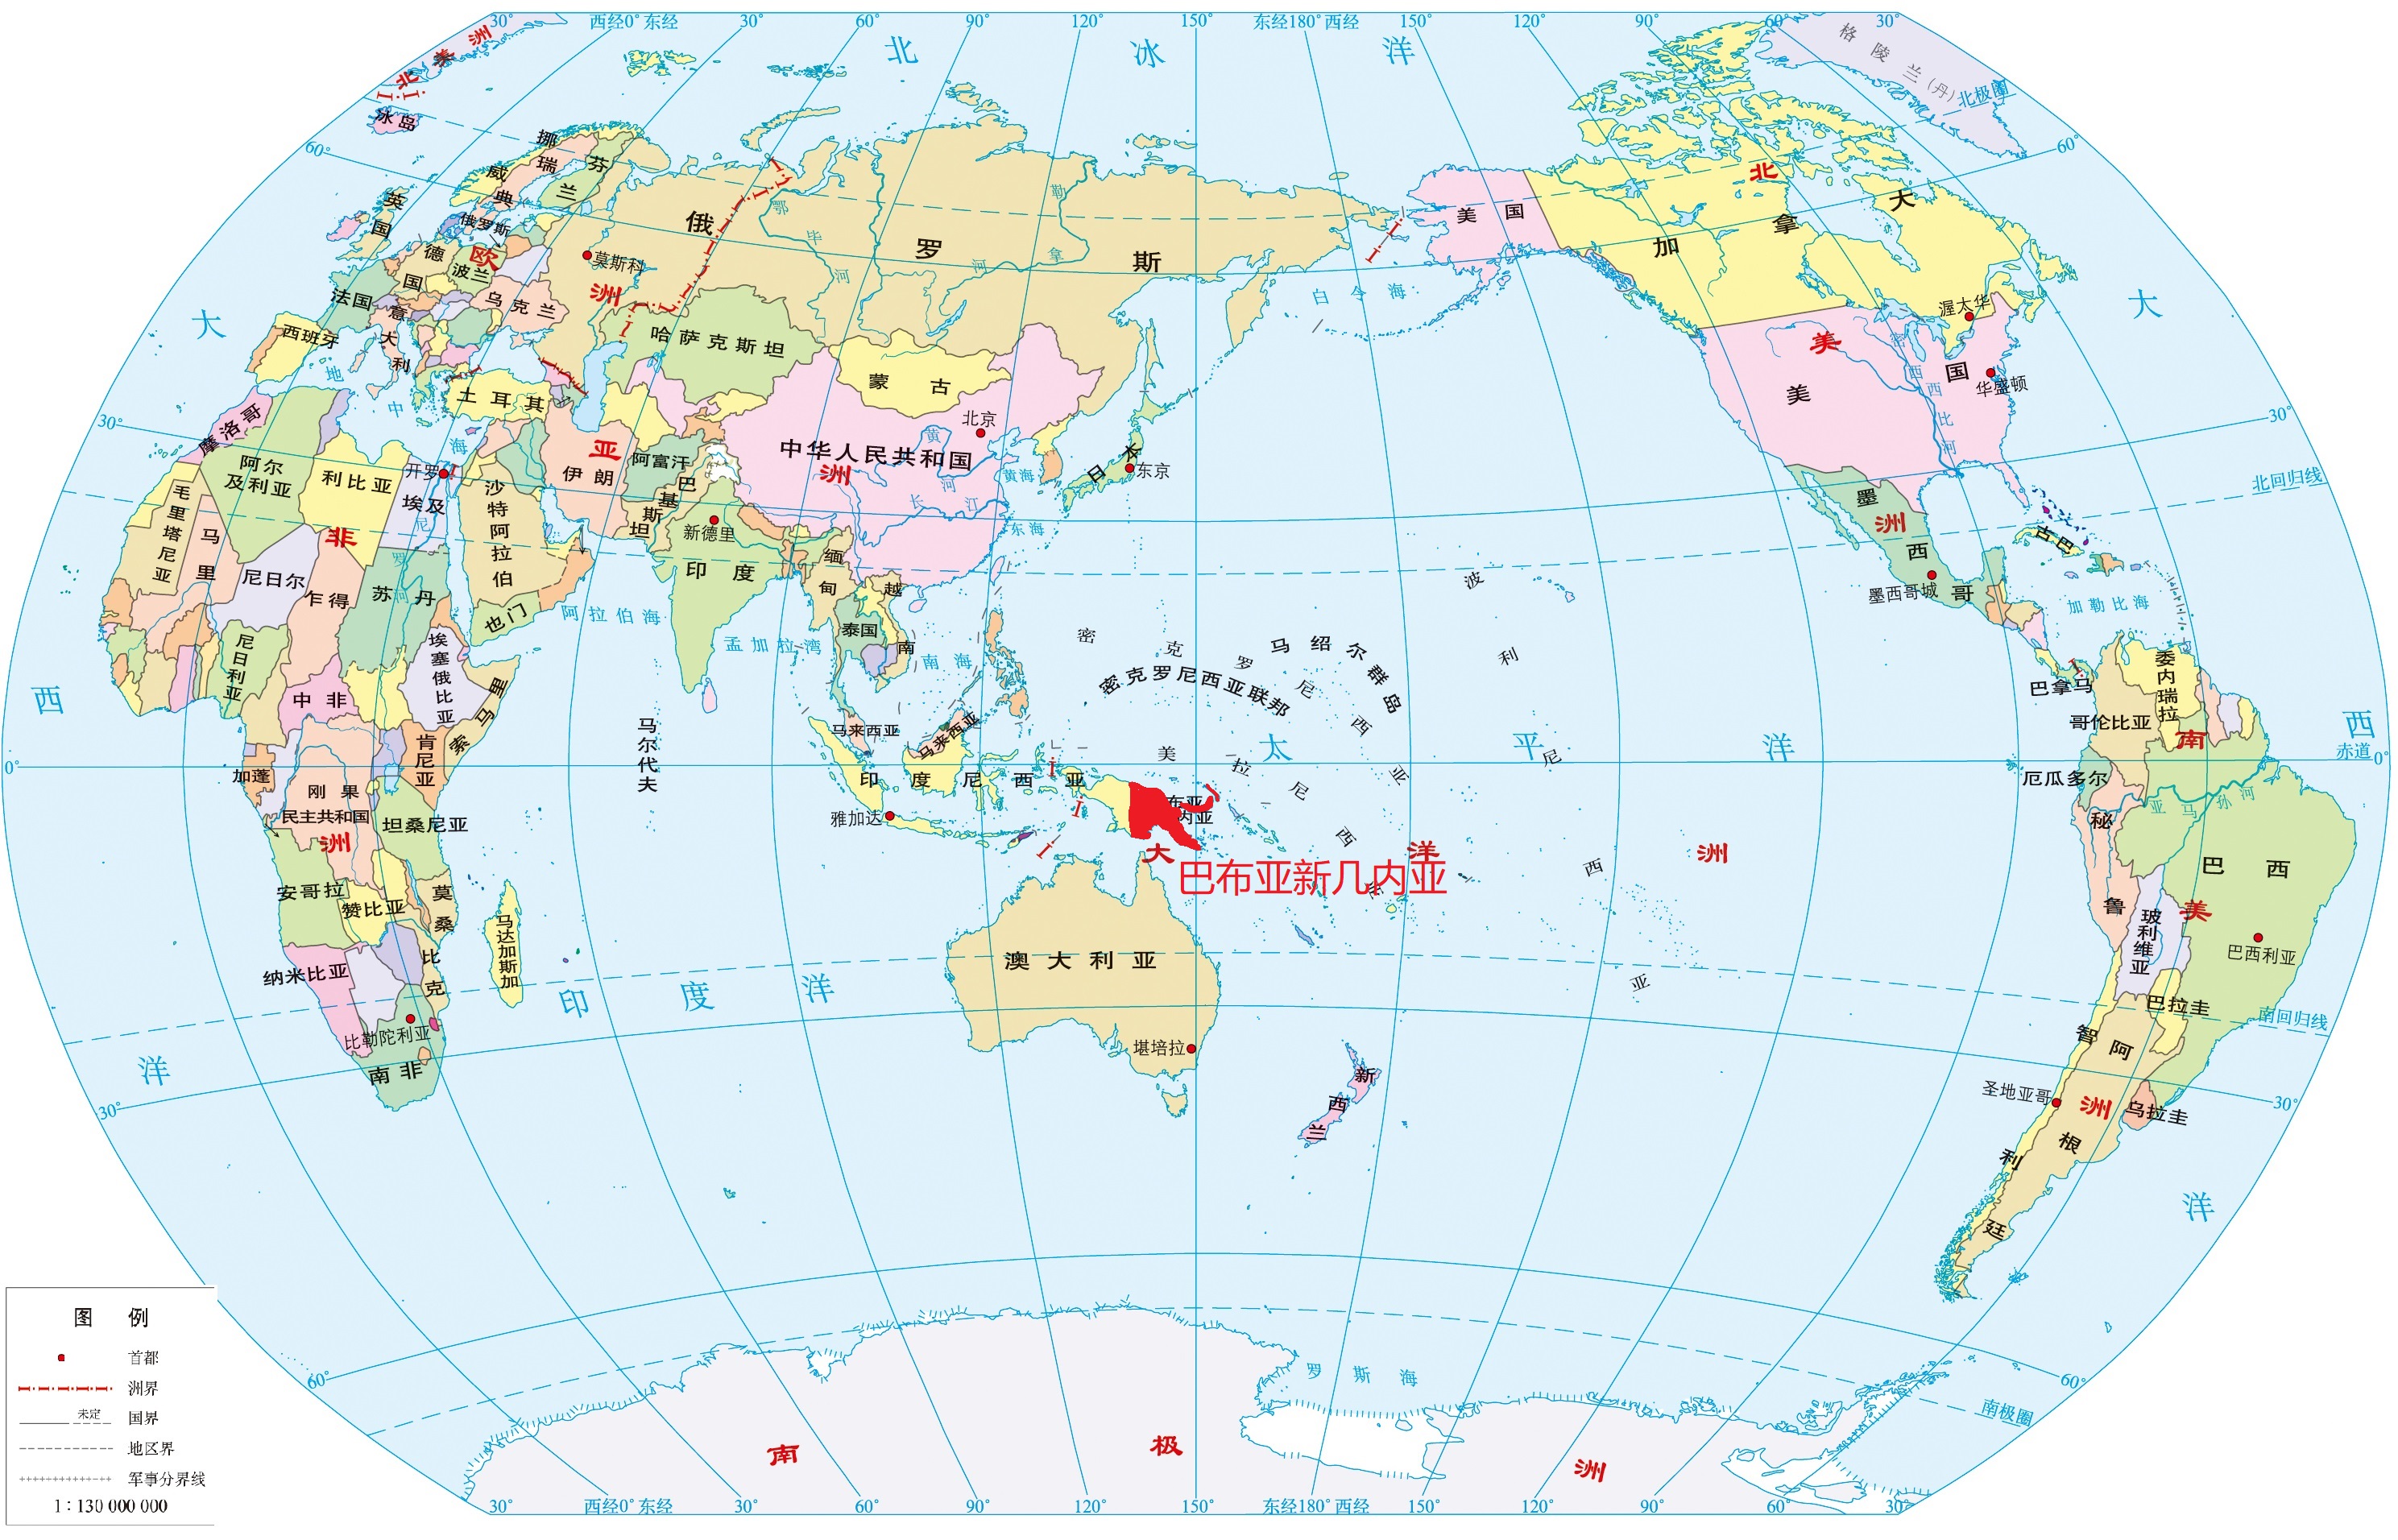 新几内亚岛位置图片